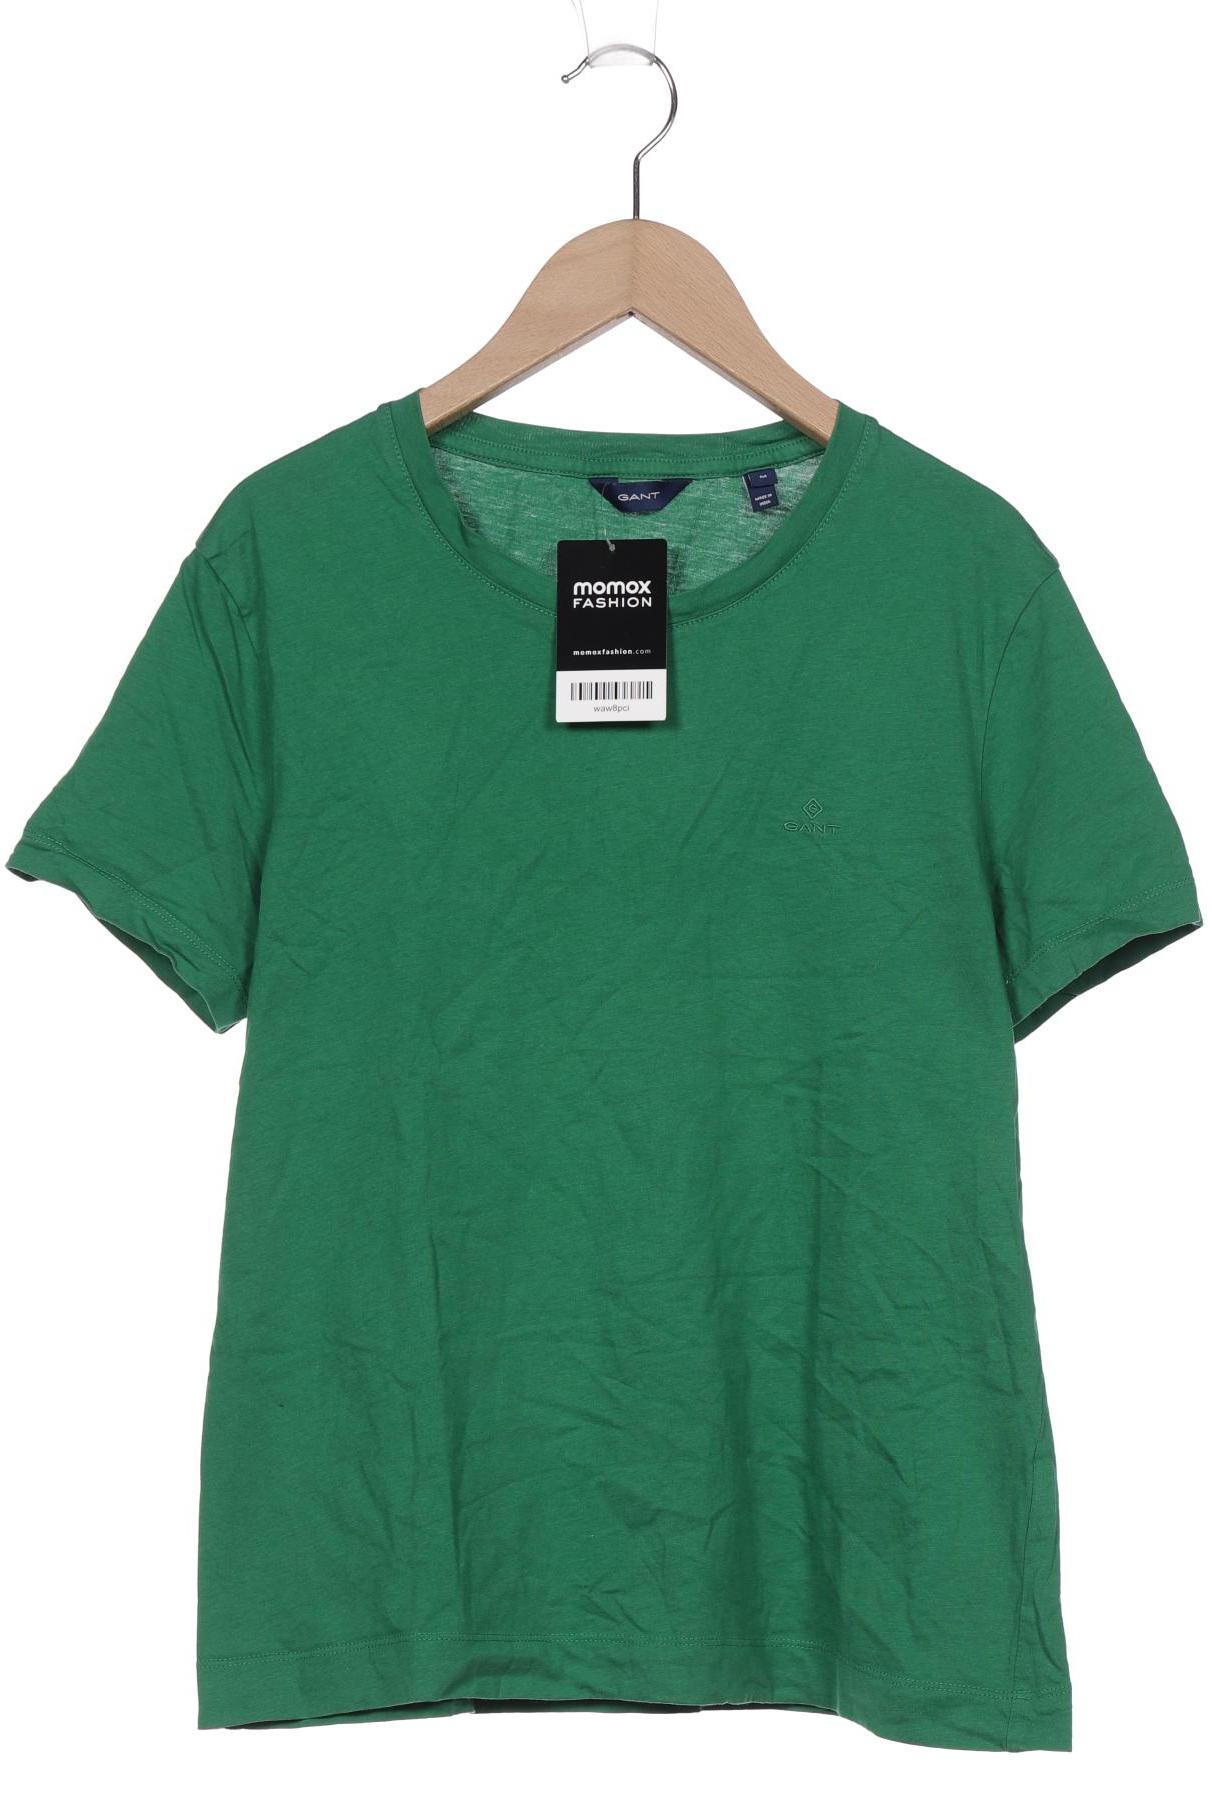 Gant Damen T-Shirt, grün, Gr. 38 von Gant